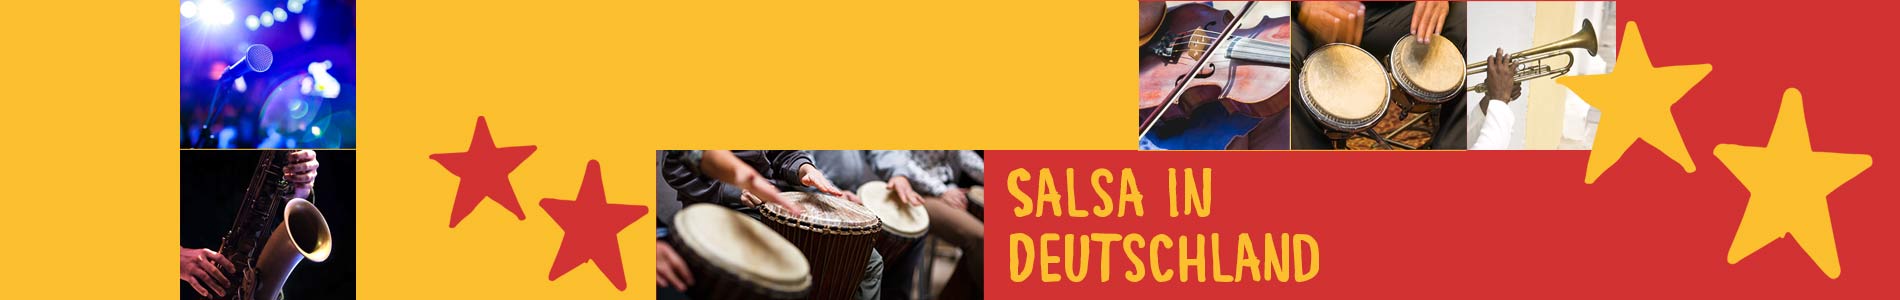 Salsa in Brahmenau – Salsa lernen und tanzen, Tanzkurse, Partys, Veranstaltungen